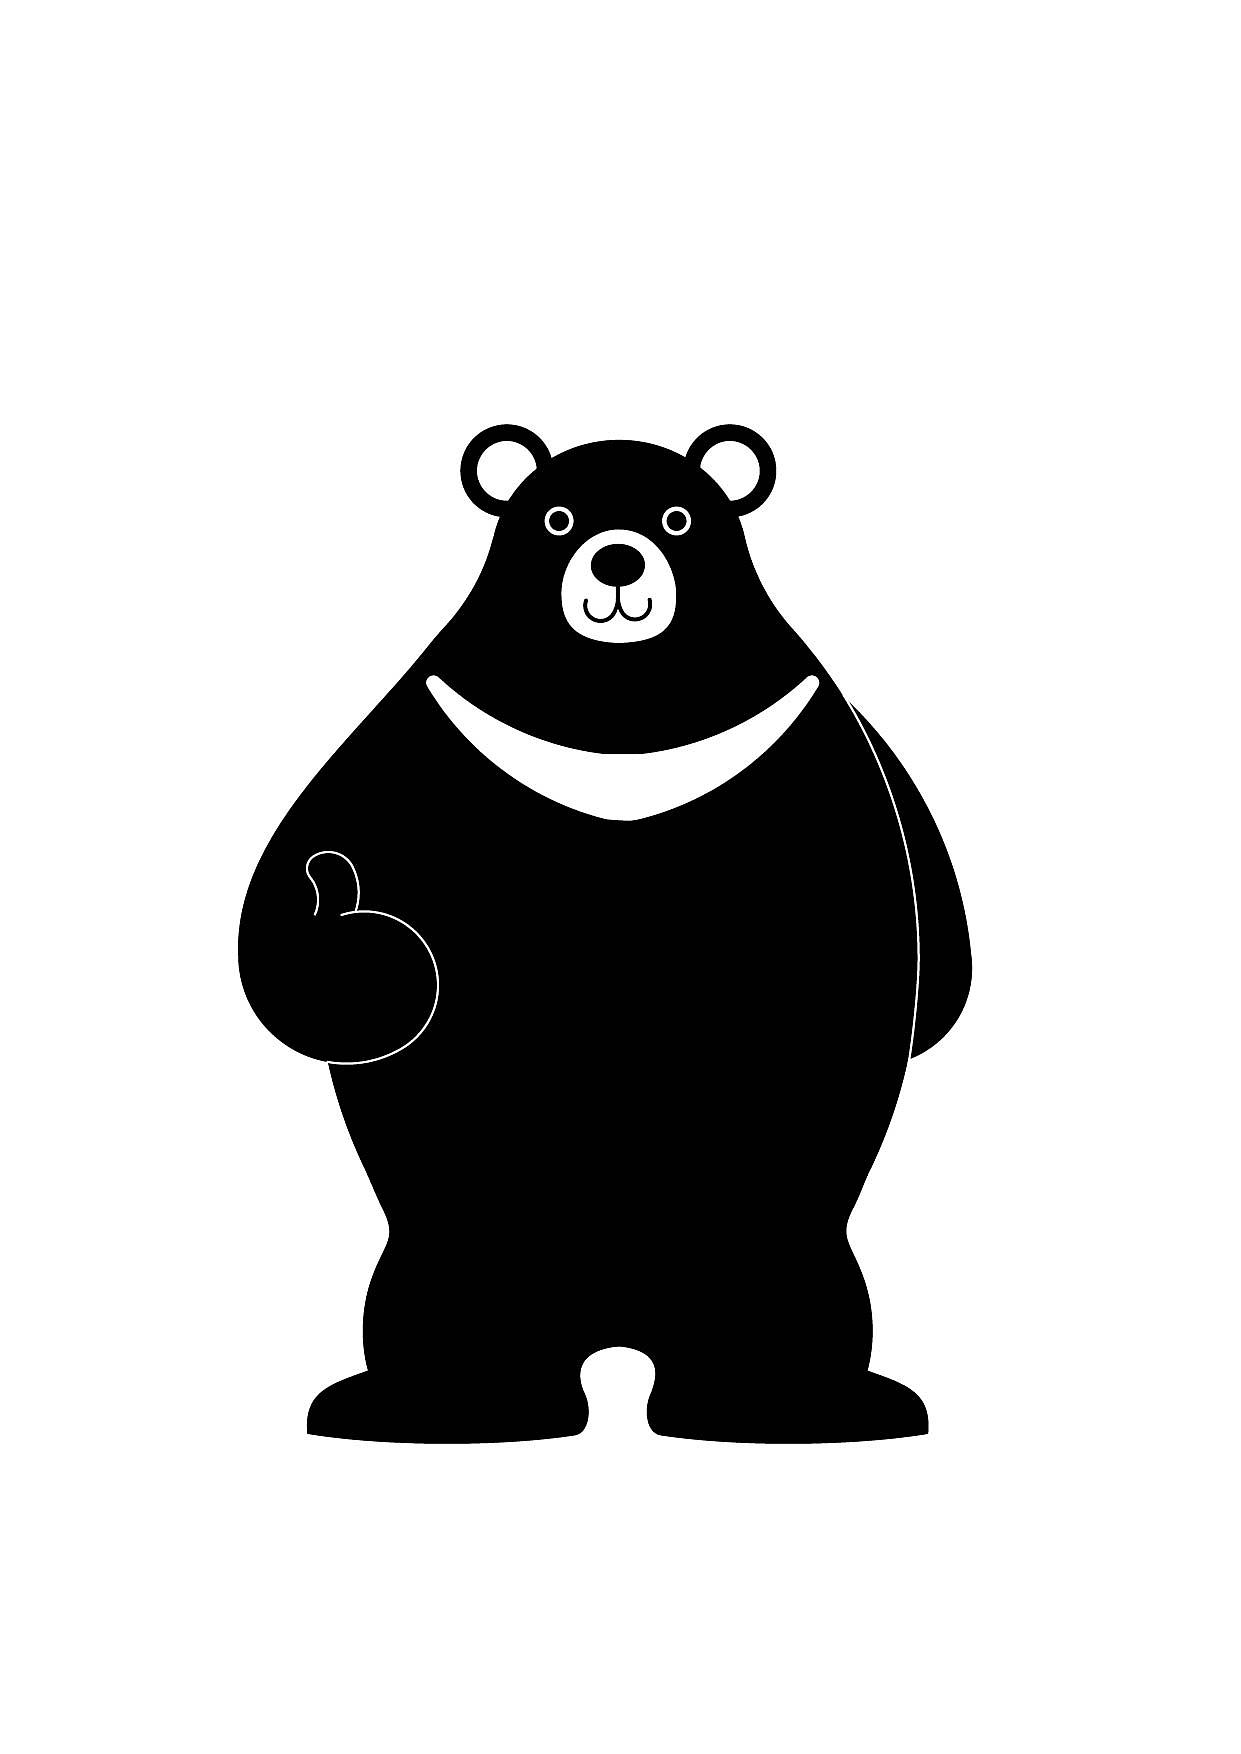 美洲黑熊卡通图片